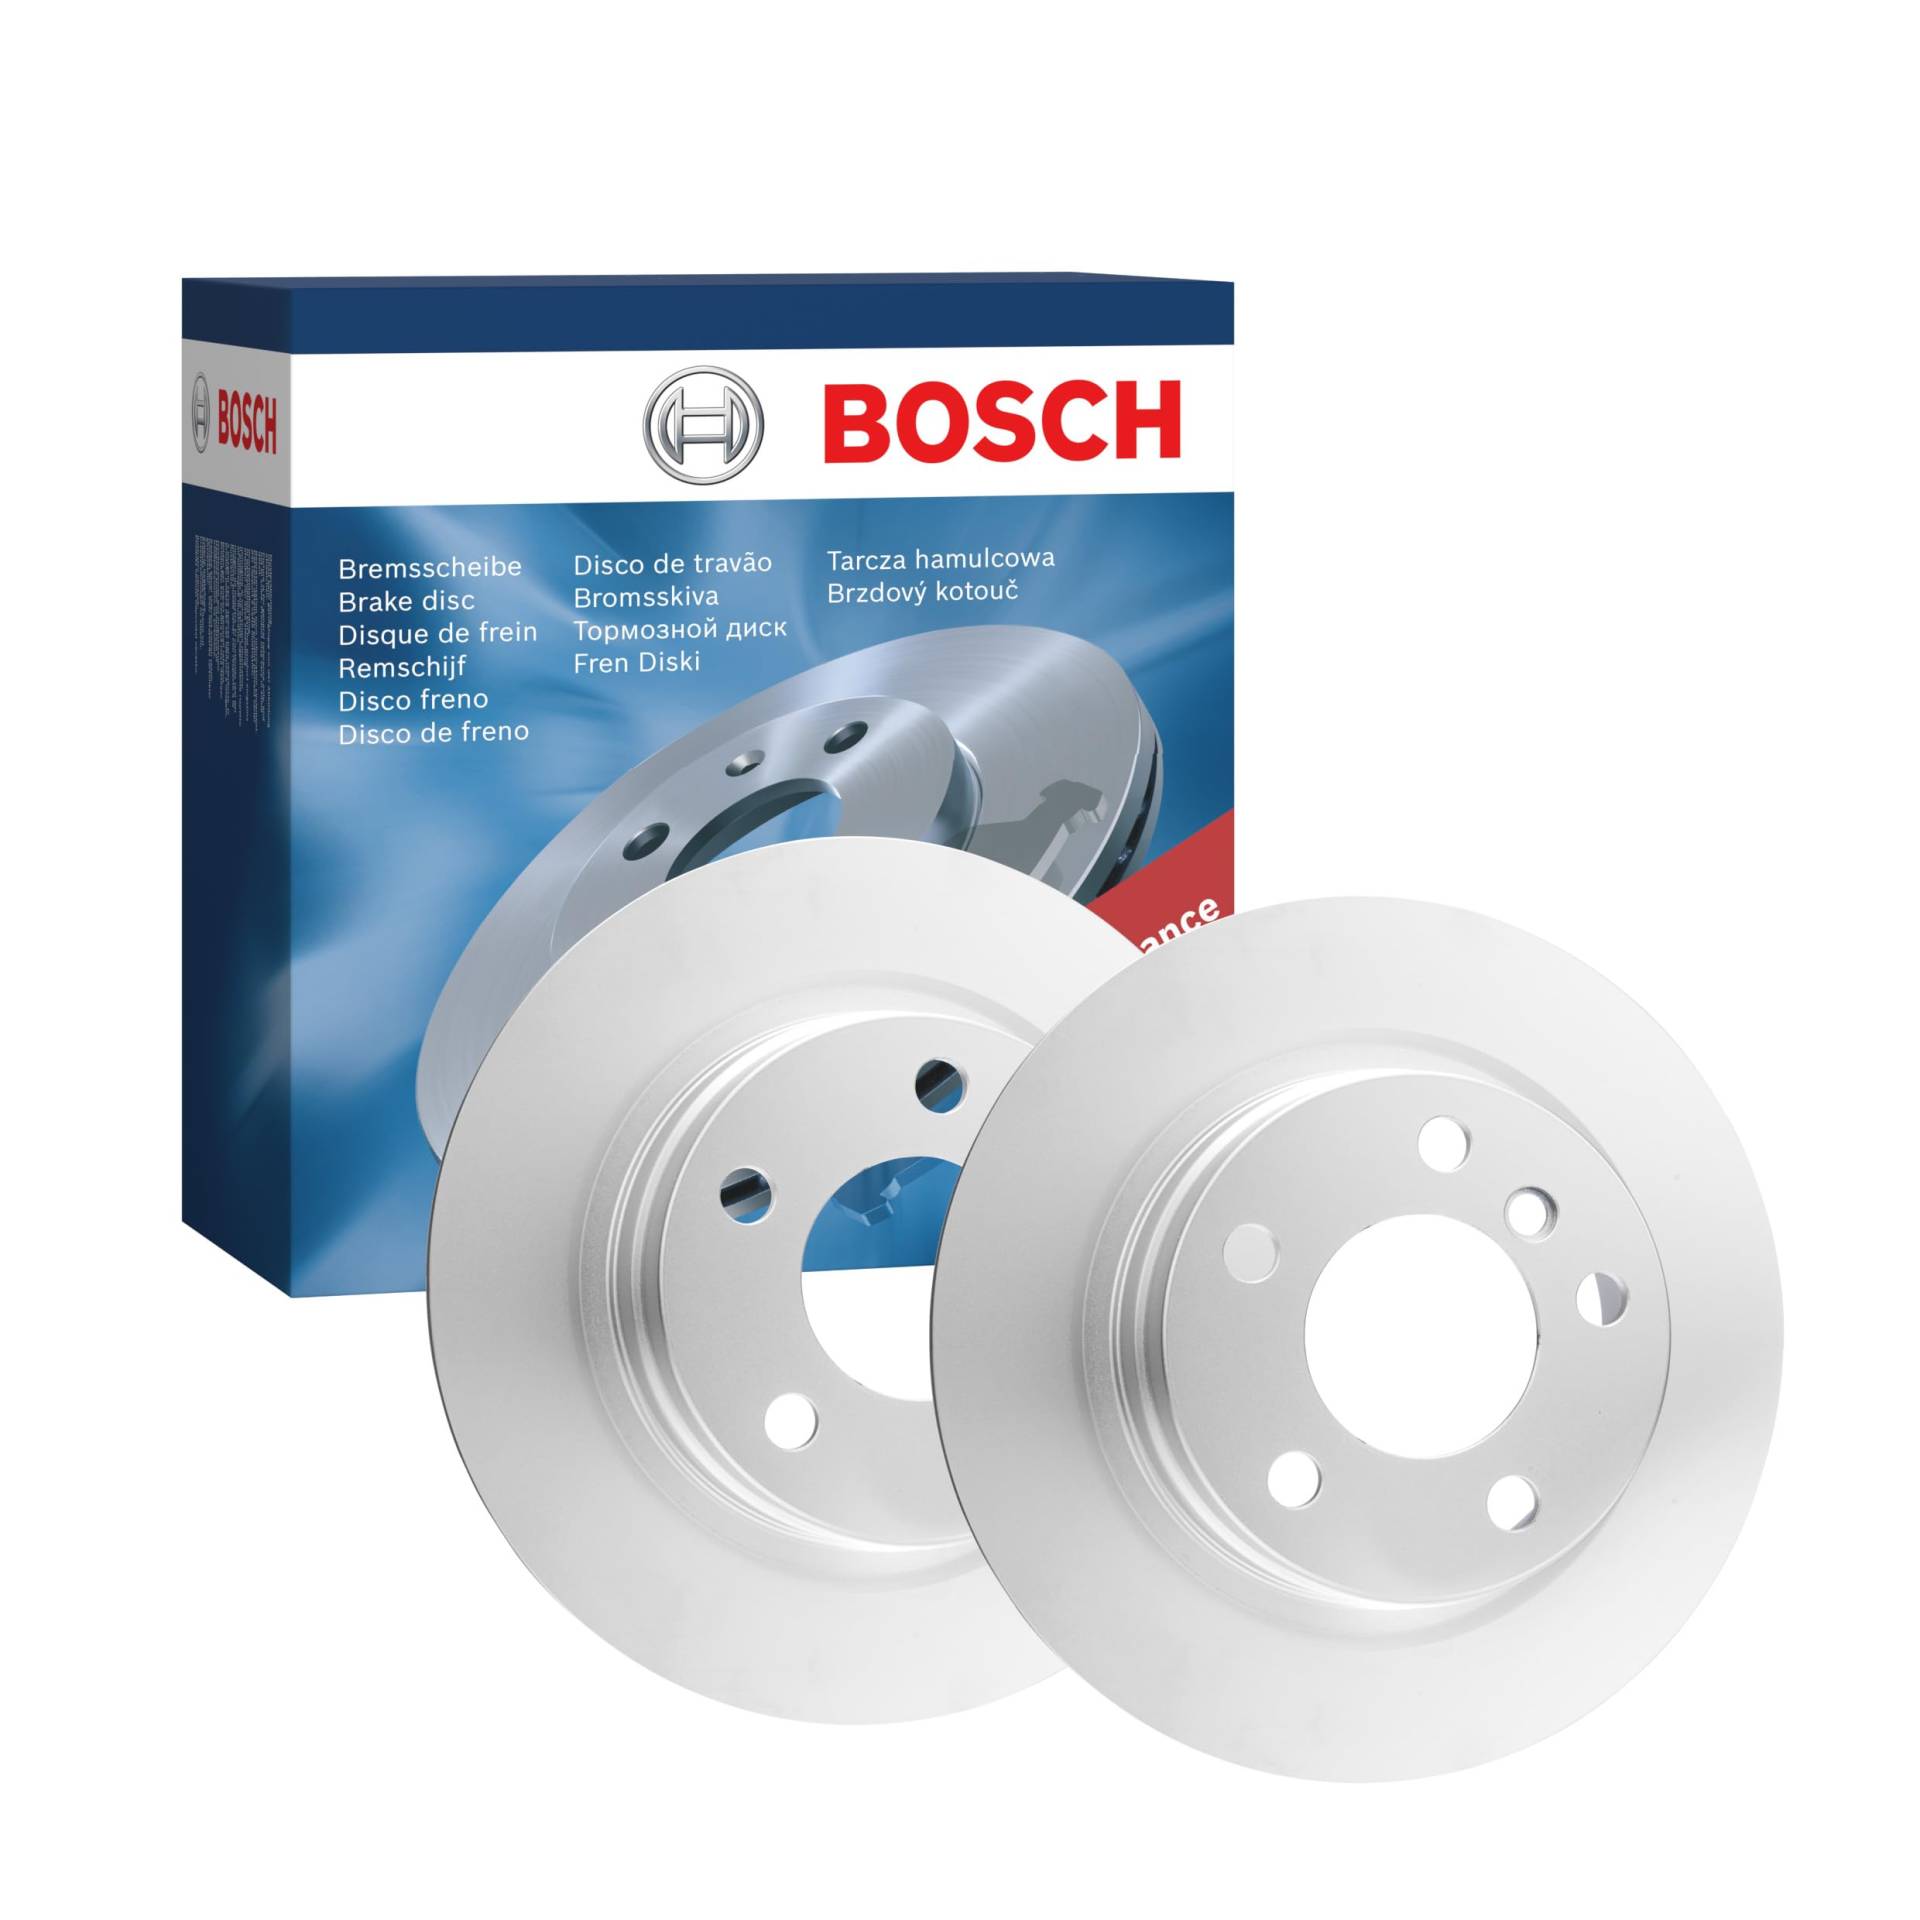 Bosch BD1650 Bremsscheiben - Hinterachse - ECE-R90 Zertifizierung - zwei Bremsscheiben pro Set von Bosch Automotive